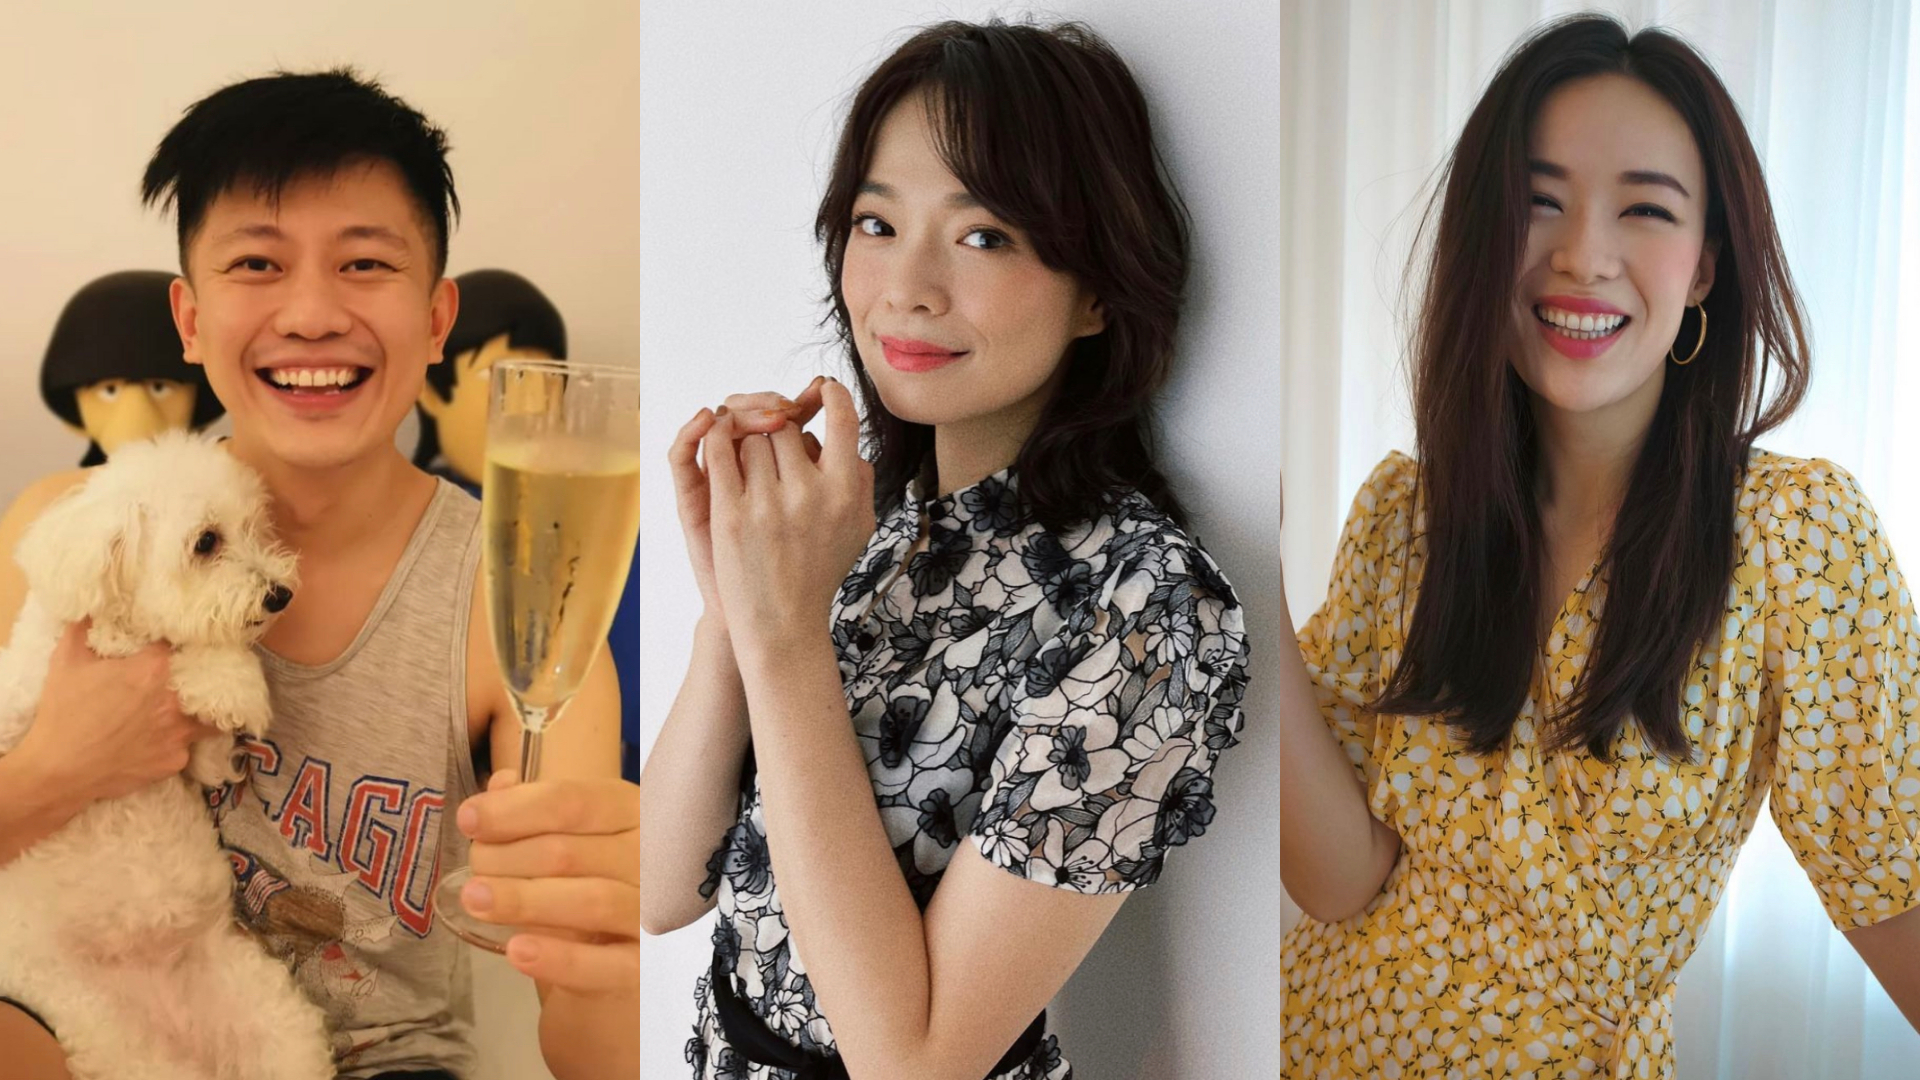 Will Pornsak, Felicia Chin, and Rebecca Lim get to ‘graduate’?